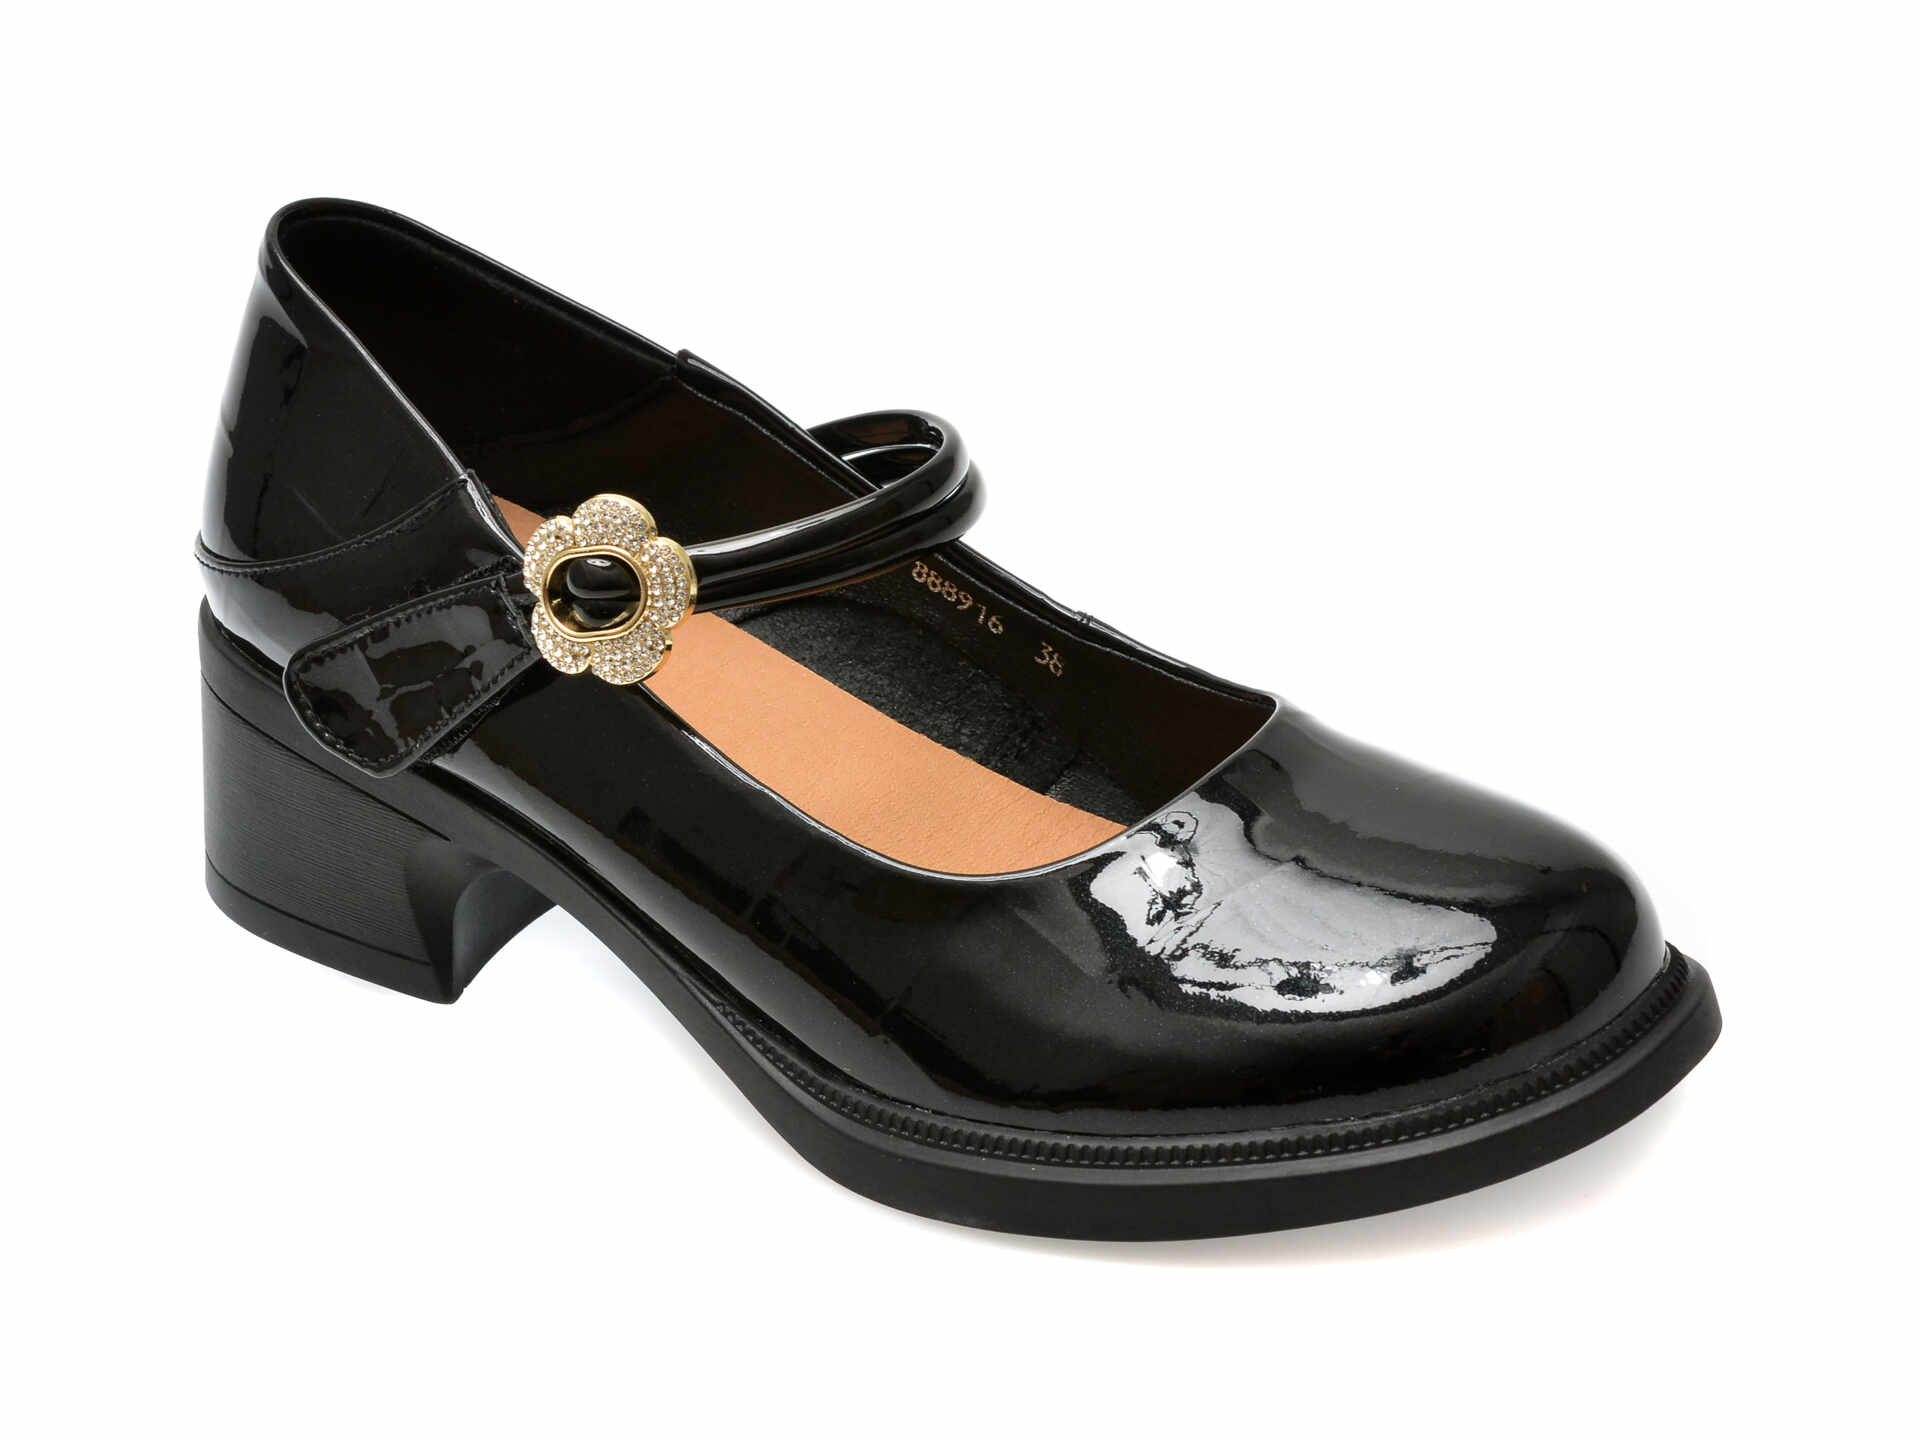 Pantofi casual FLAVIA PASSINI negri, 888916, din piele naturala lacuita